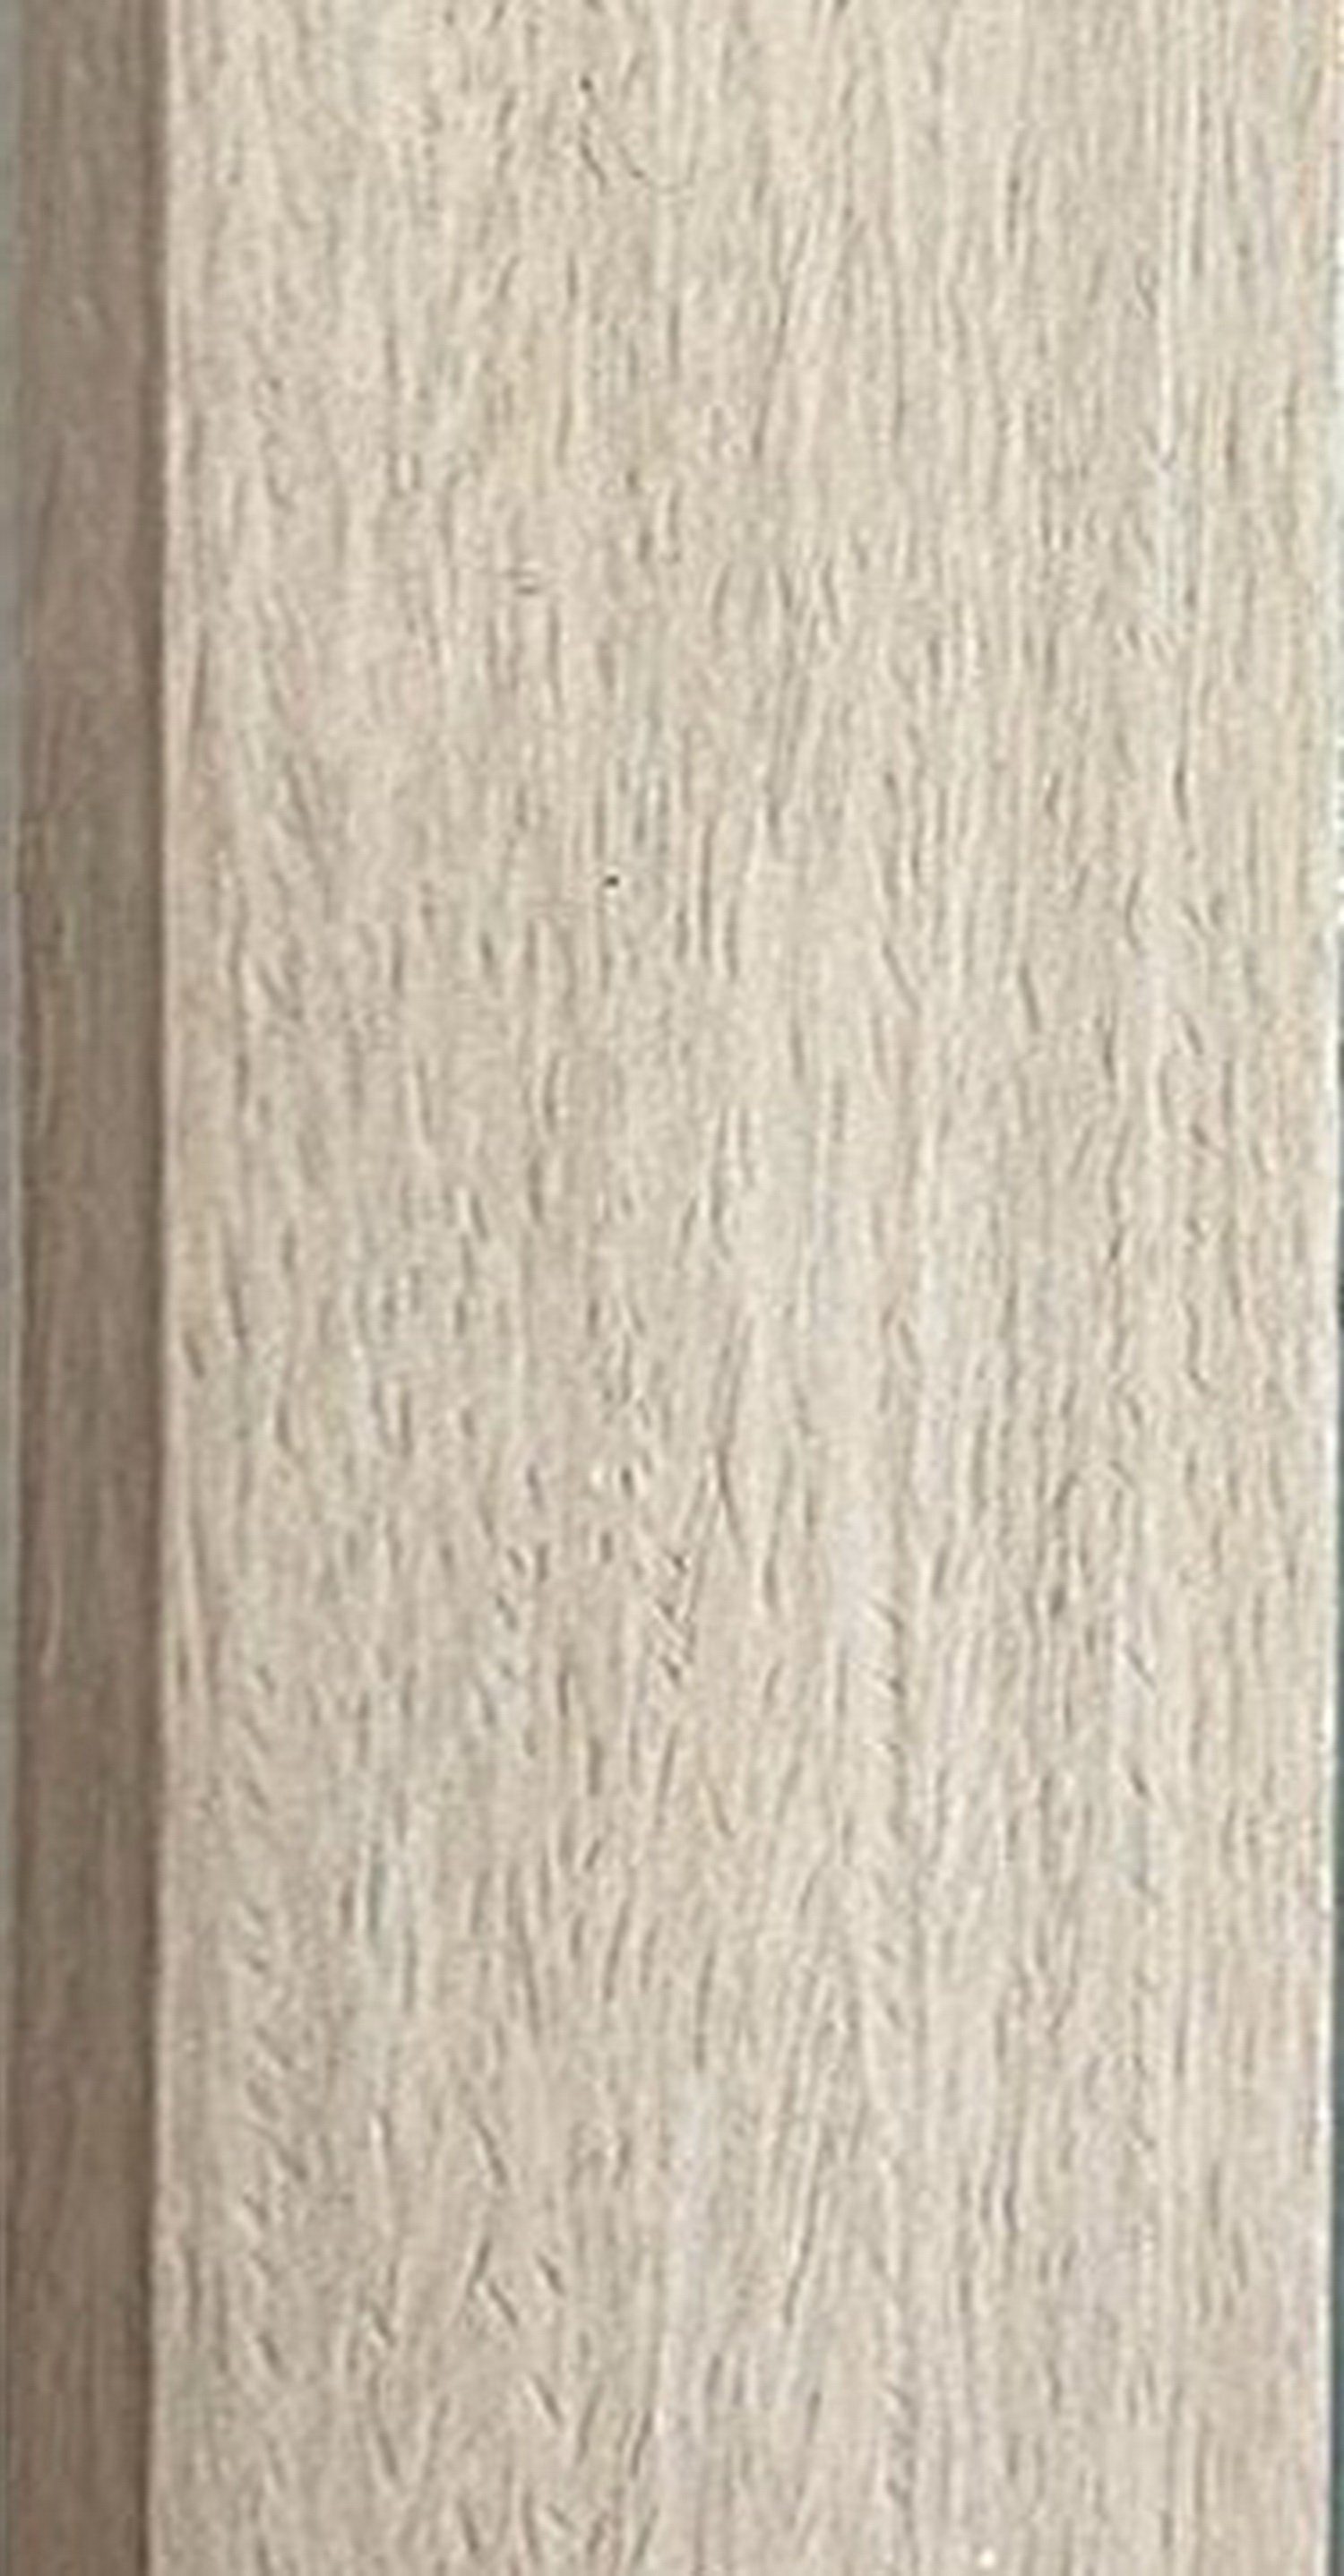 50x150 Your-Homestyle Holz 24 Deko-Werk Ganzkörperspiegel/Spiegel/Wandspiegel mit Zena Rahmen, weiß Glas Vintage Wandspiegel